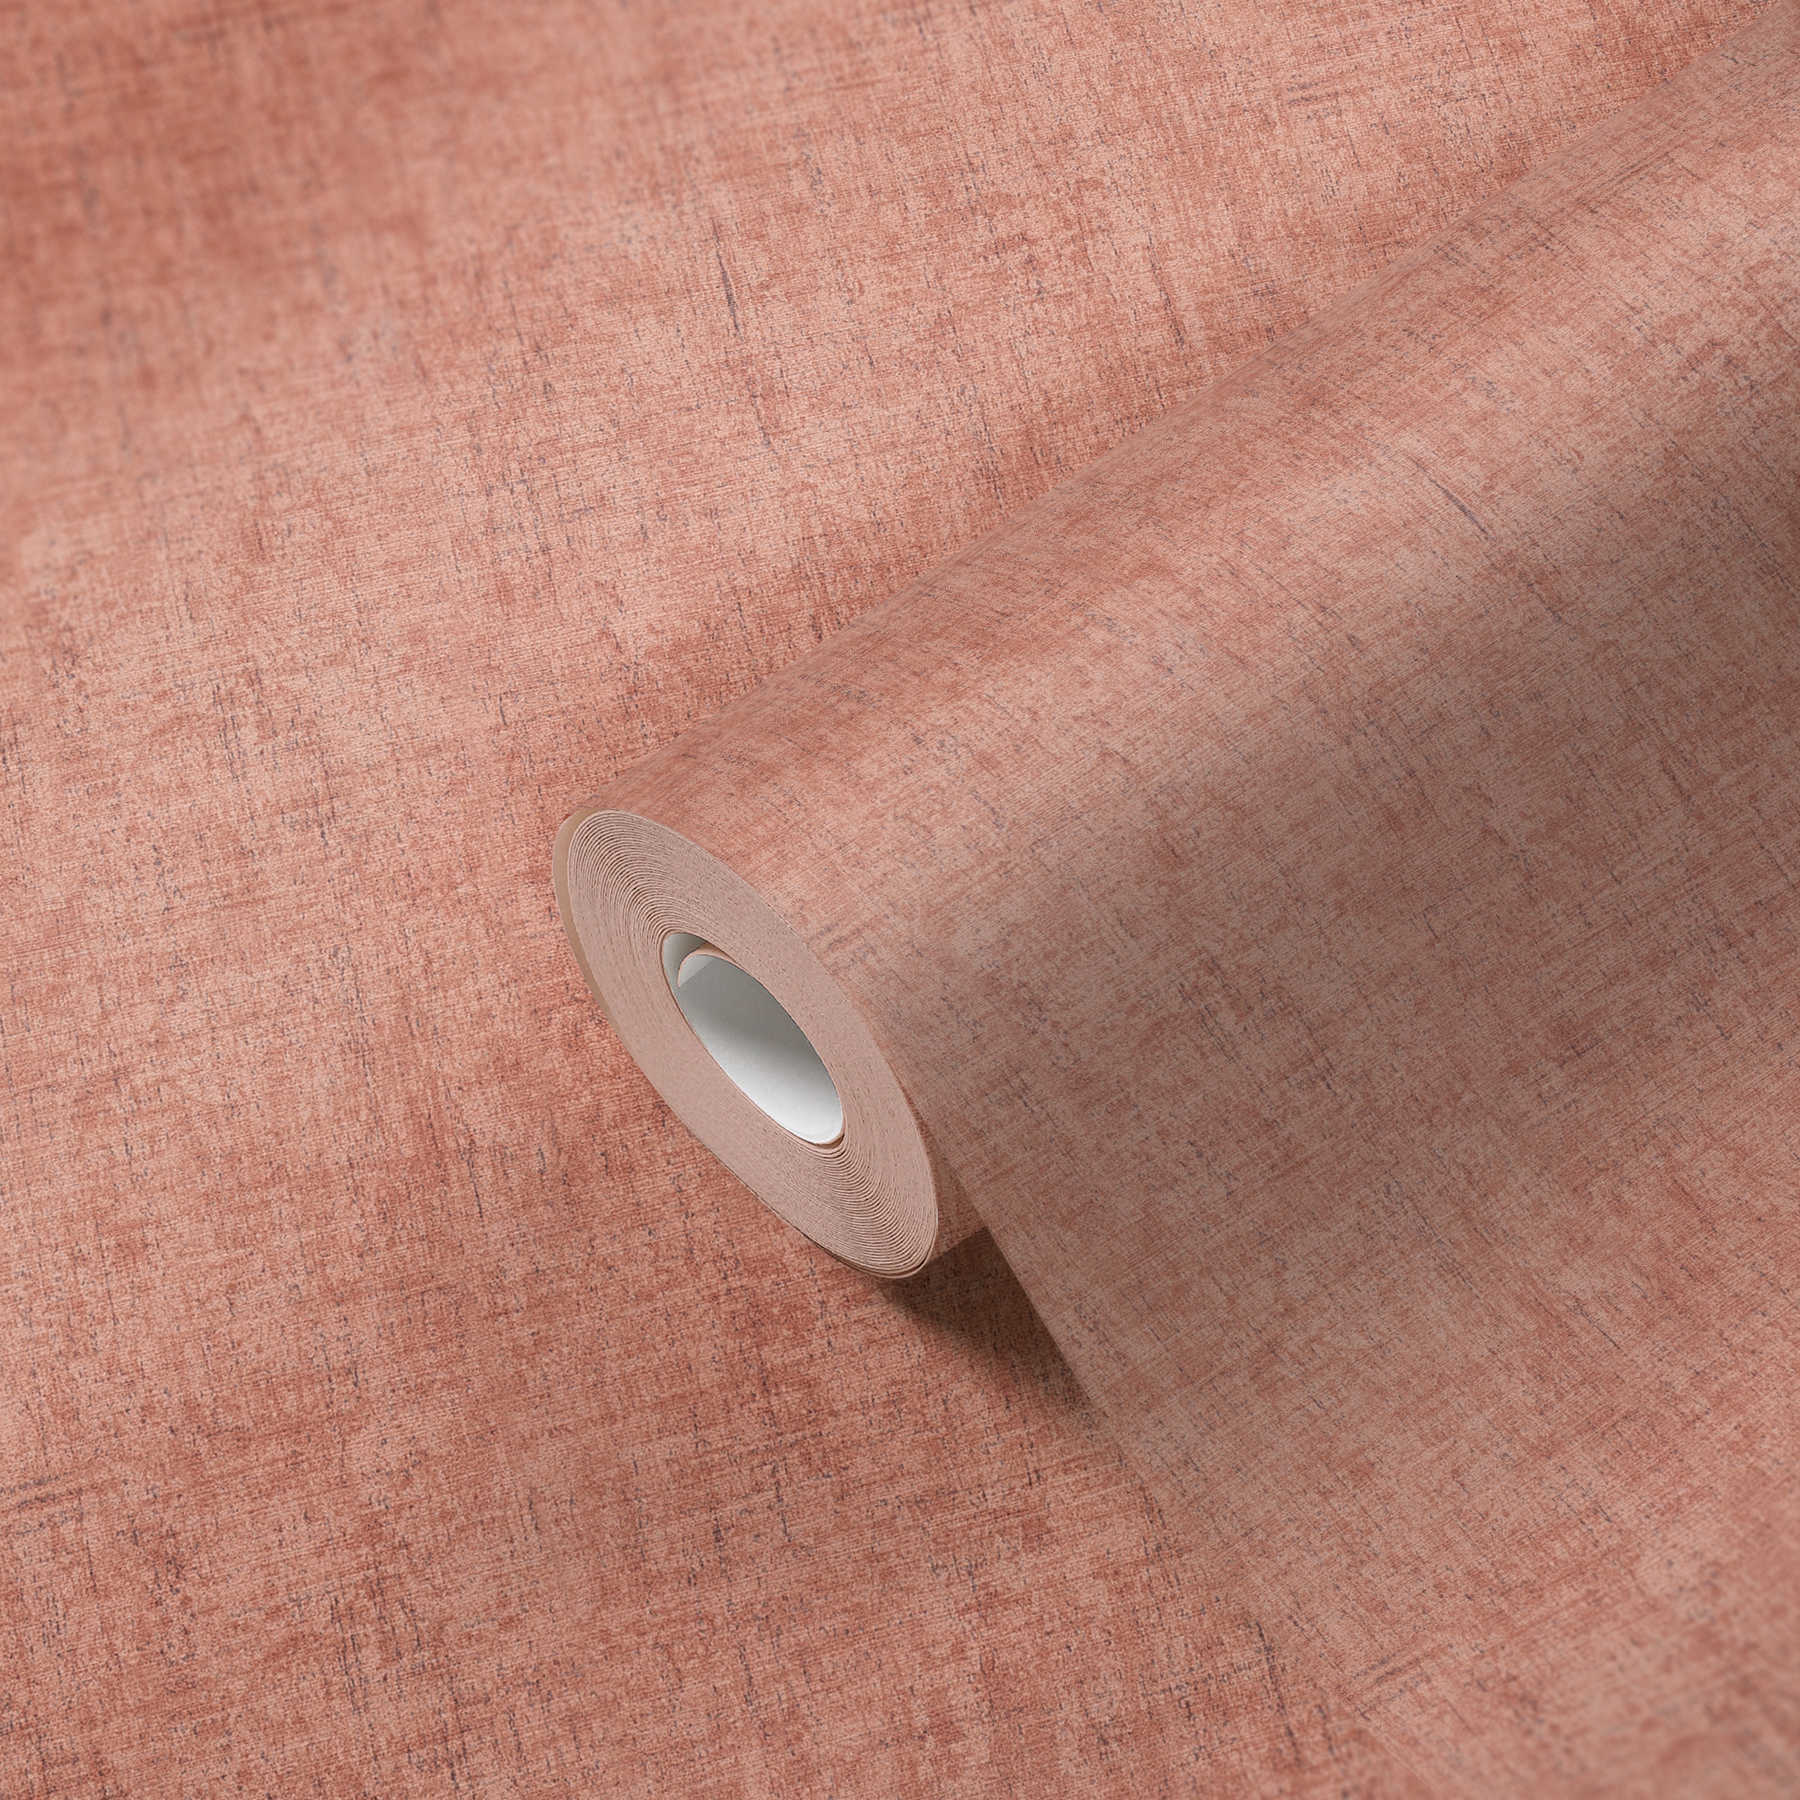             Carta da parati in tessuto non tessuto rosa grigio screziato con tratteggio e texture in rilievo
        